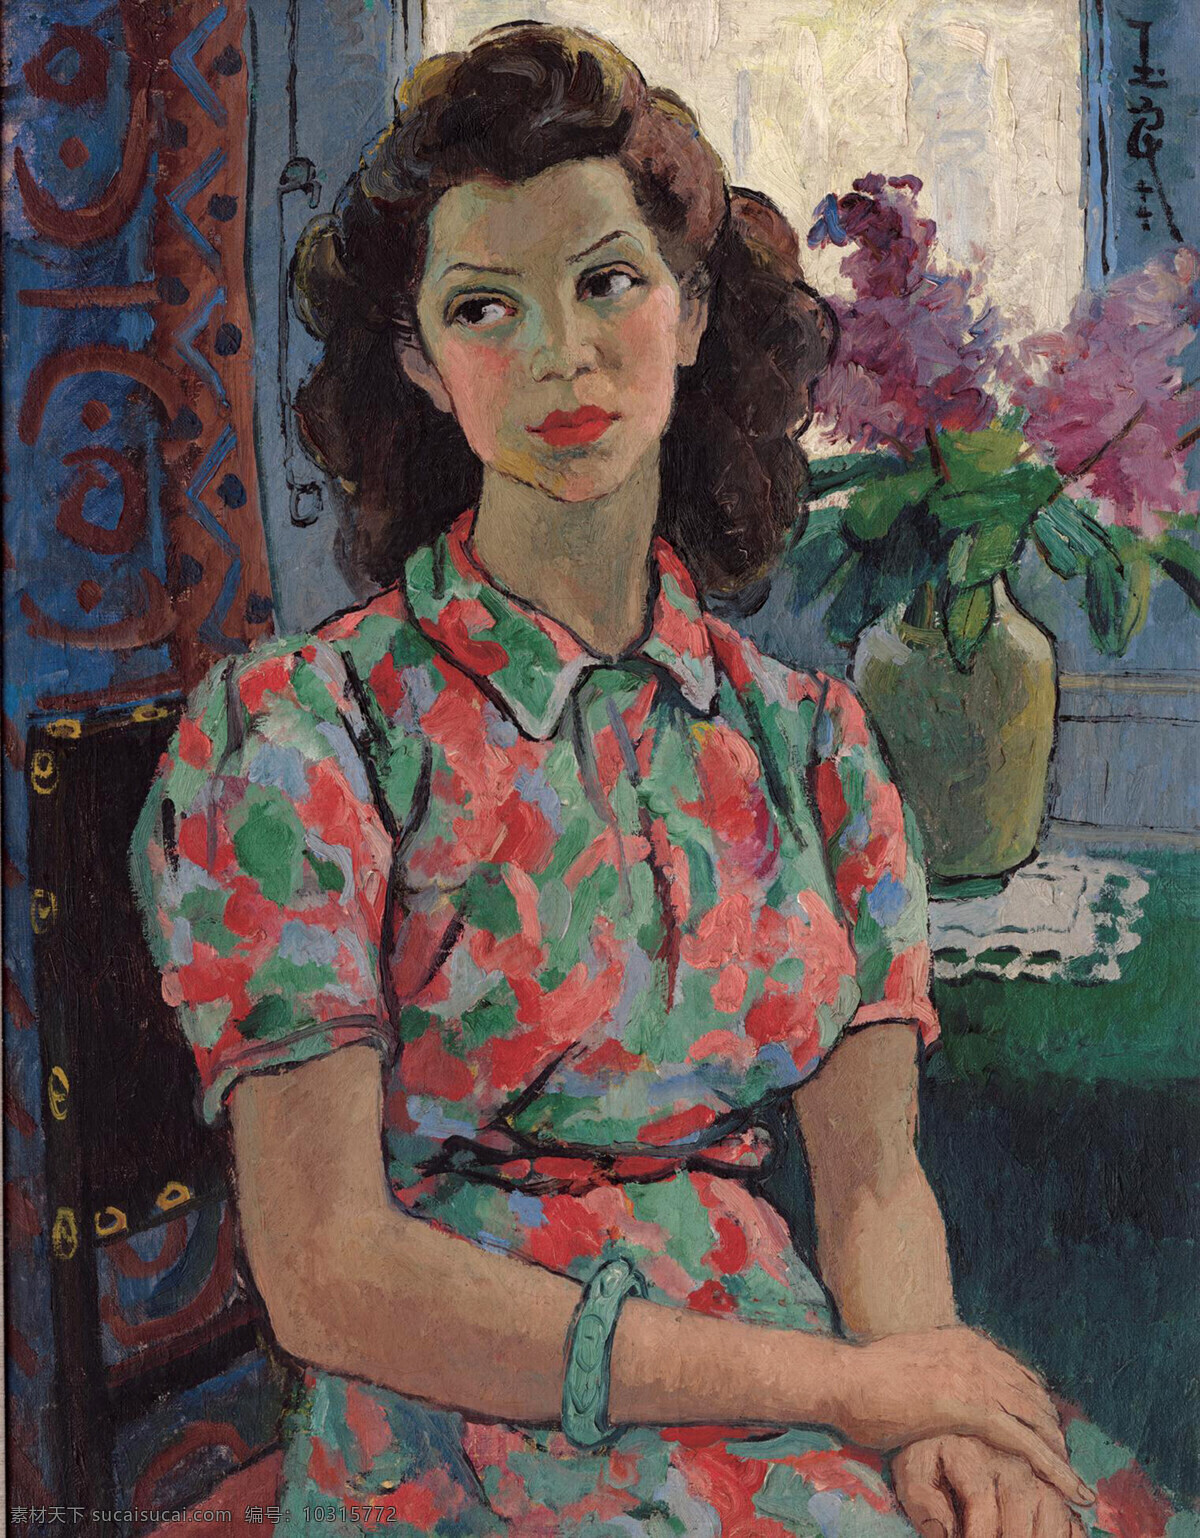 窗前女郎 美术 油画 潘玉良油画 女人 女子 女郎 表情 姿势 窗台 花朵 油画艺术 油画作品42 绘画书法 文化艺术